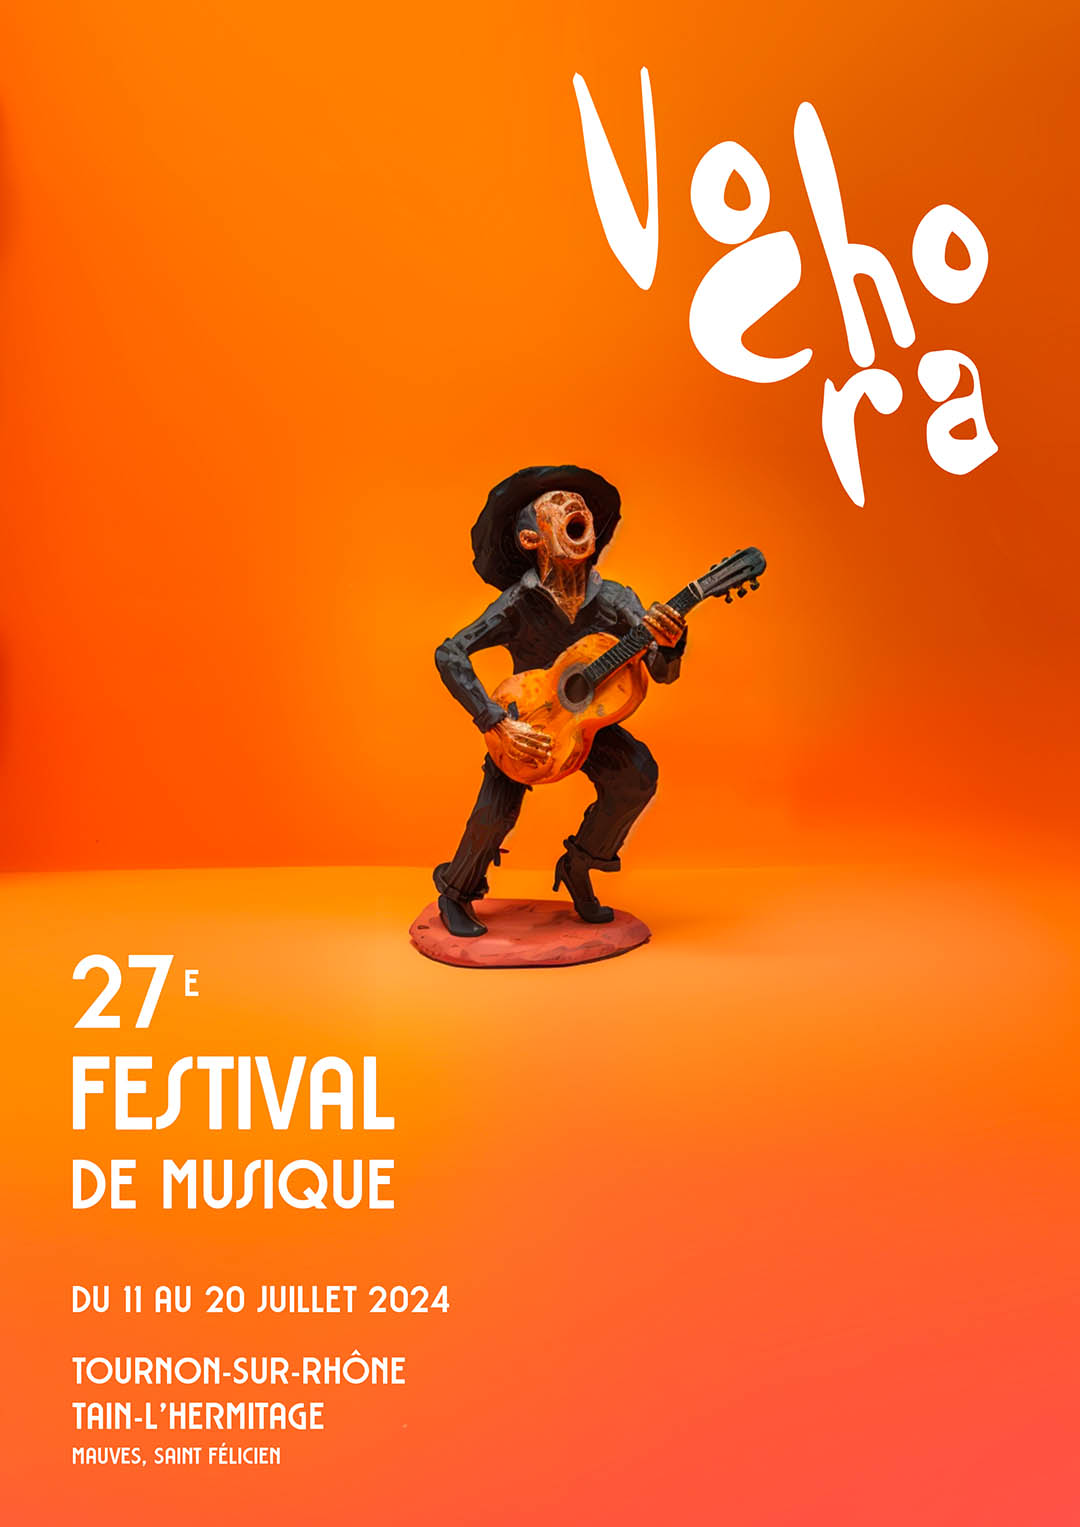 Festival de musique VOCHORA. Du 11 au 20 juillet 2024.